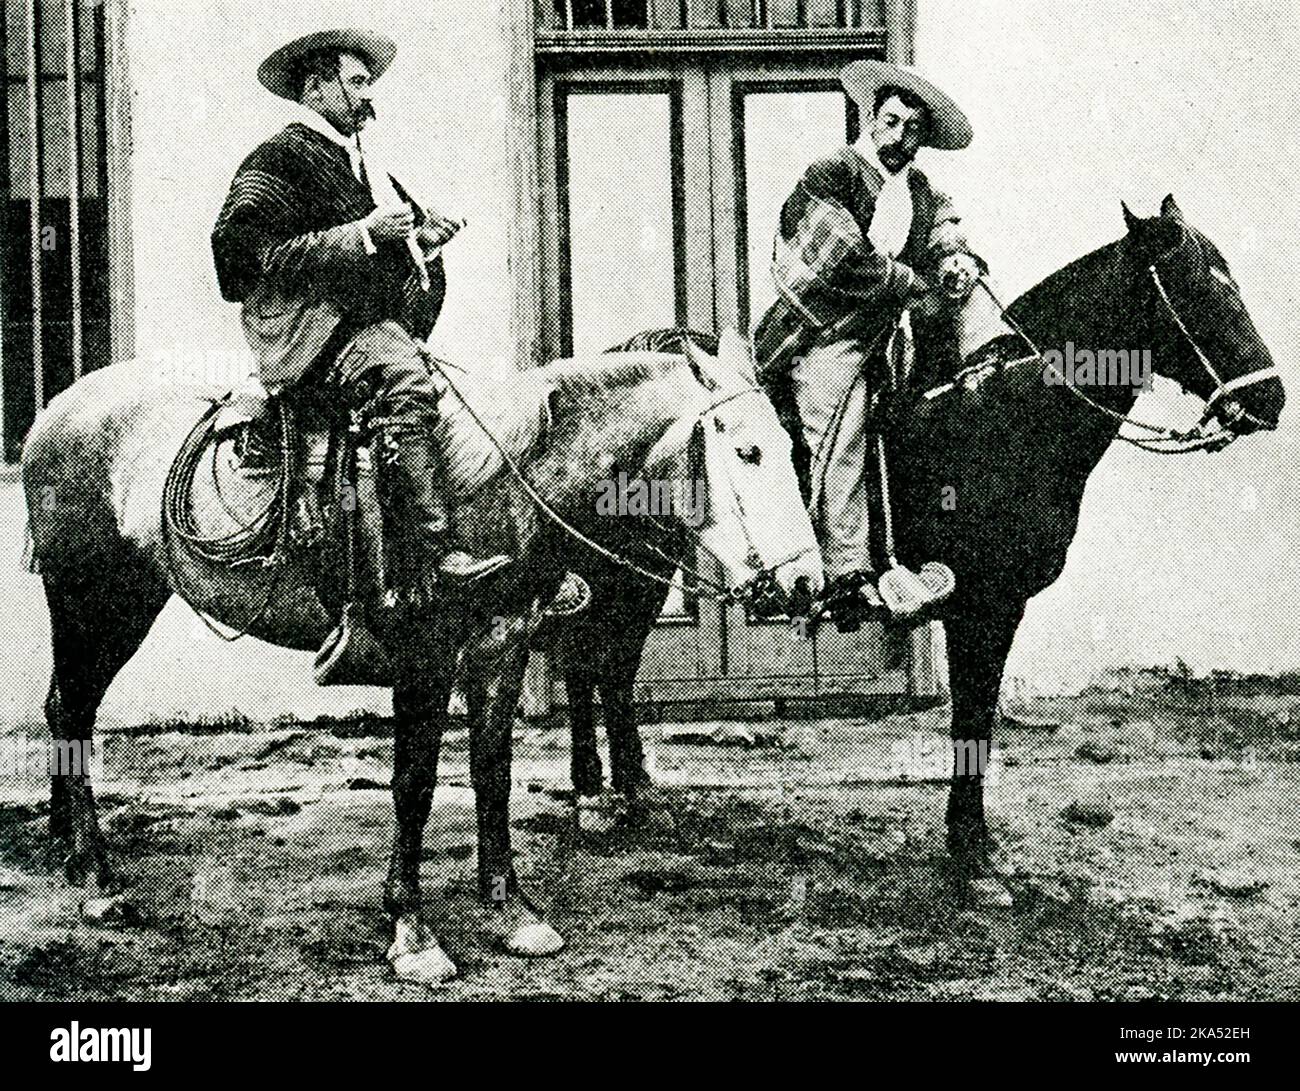 Diese Abbildung aus dem Jahr 1914 zeigt zwei Reiter (oder Cowboys) in Chile. Der Bildunterschrift zufolge wird ein chilenischer Cowboy oder Reiter nie ohne seinen breiten Rundkrempelhut, seinen bunten Umhang und seinen Bandschlitz um die Taille gesehen. Sie sind als Guasos oder huasos bekannt. Stockfoto